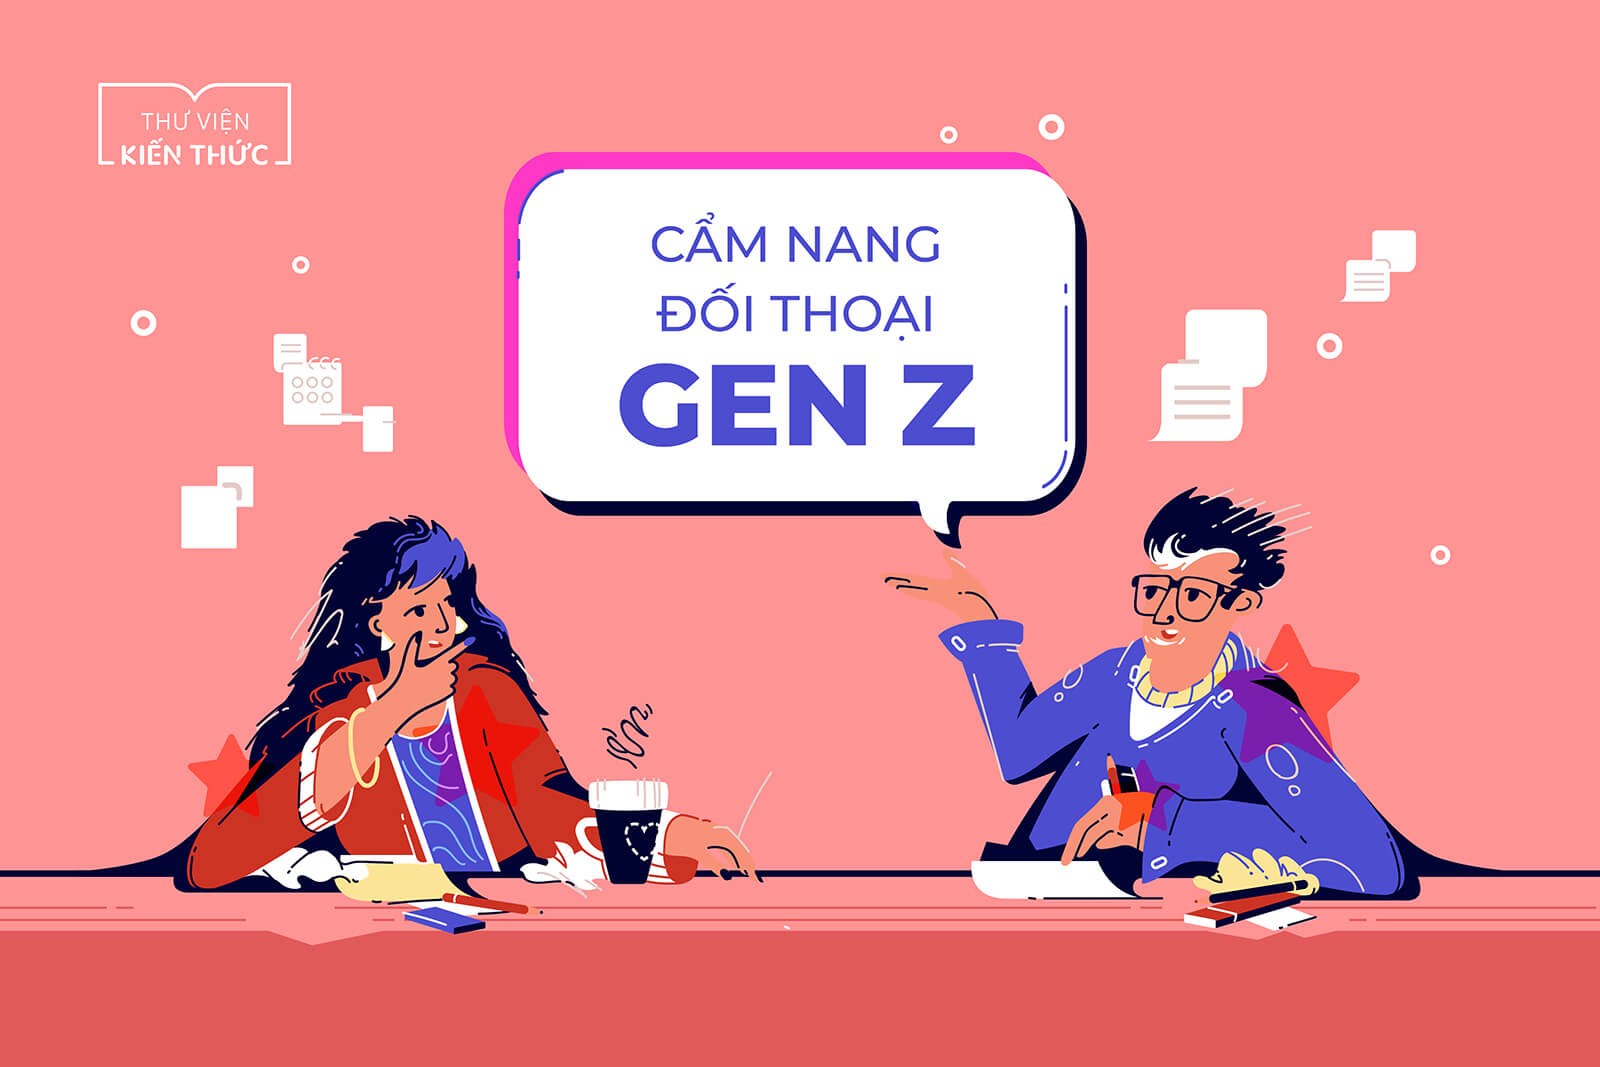 Cẩm nang đối thoại với Gen Z